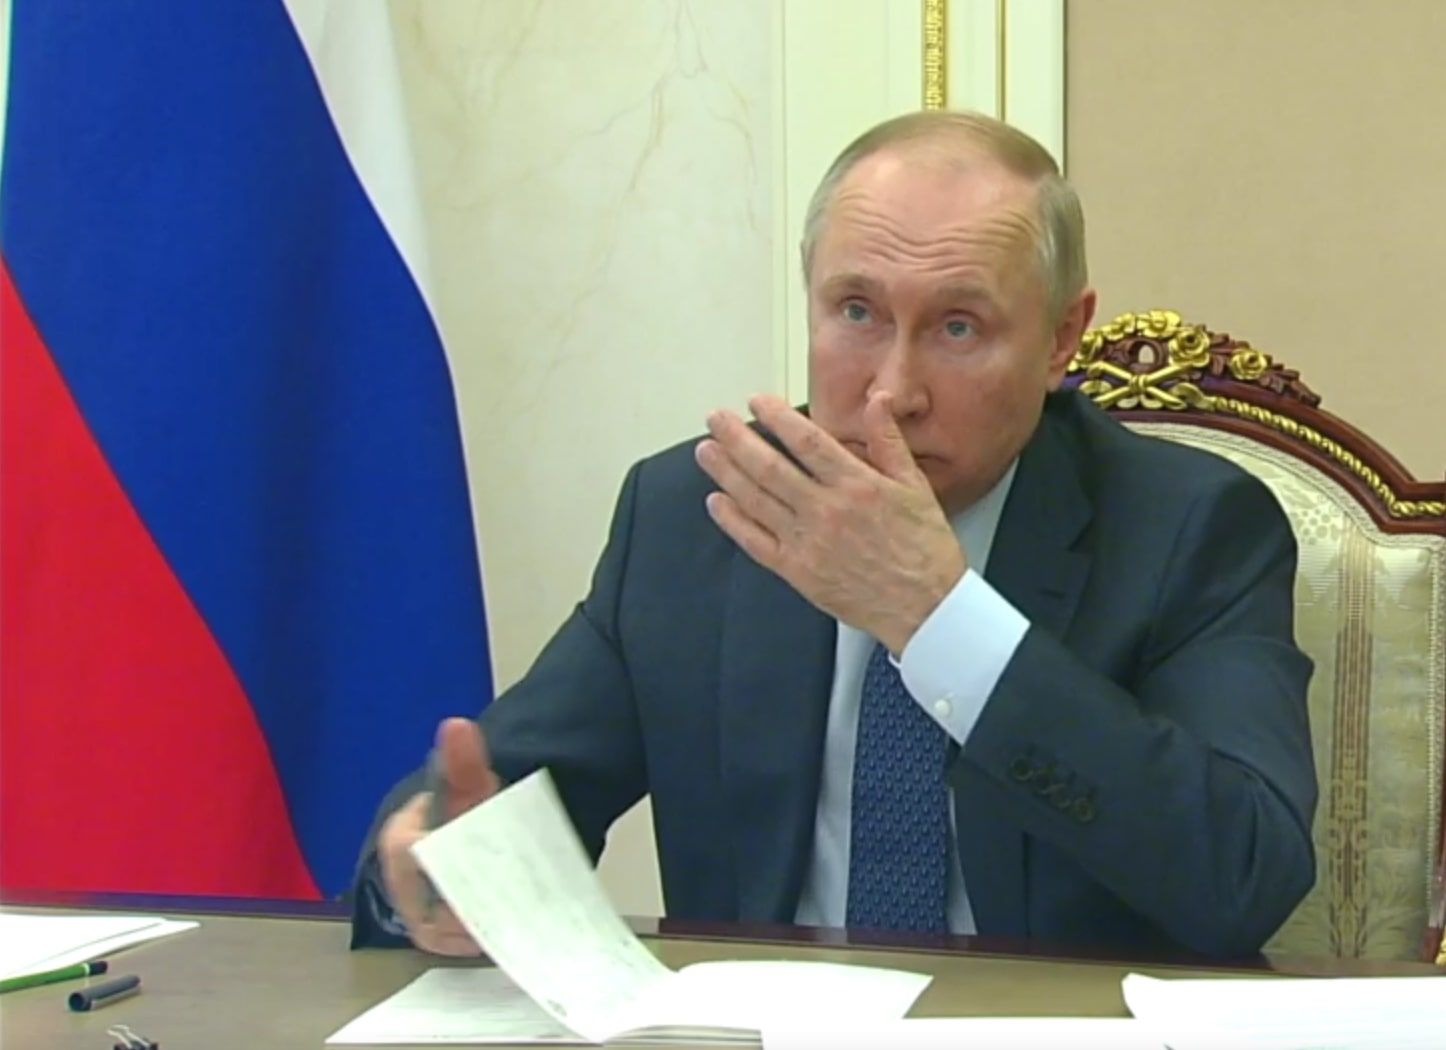 Володимир Путін видав маячню, що Росія бореться за свої інтереси мирними засобами - 24 канал